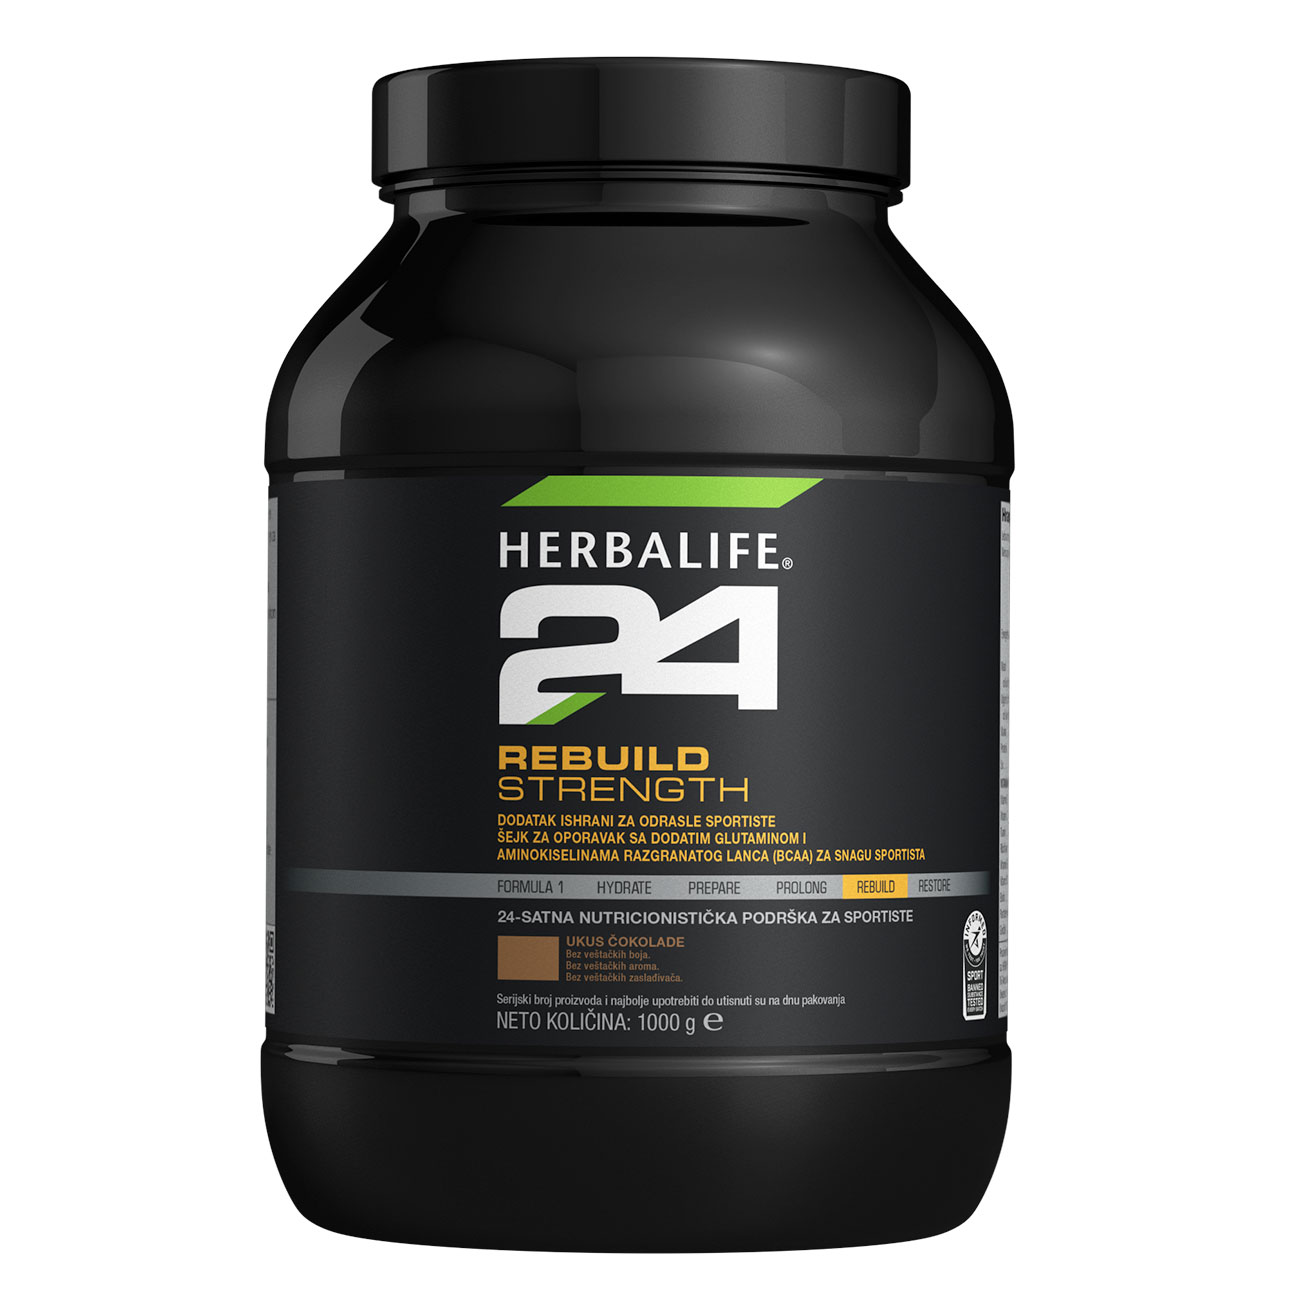 Herbalife24® Rebuild Strength Dodatak ishrani - Napitak za oporavak sa kombinacijom ugljenih hidrata i proteina ukus čokolade slika proizvoda.